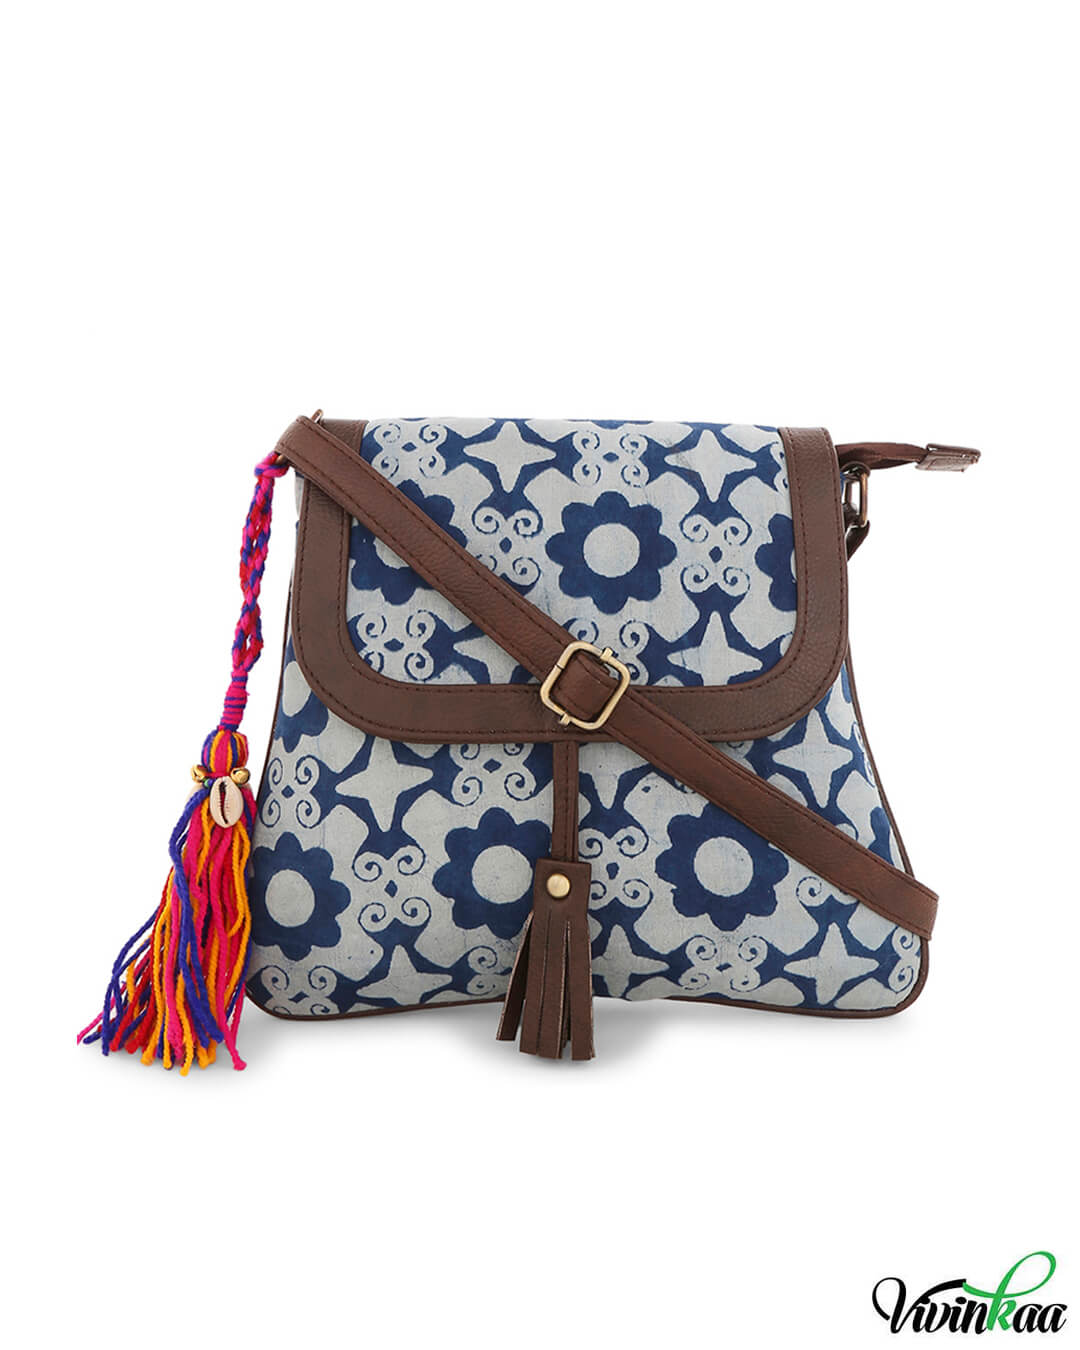 Buy Vivinkaa Brown Printed Sling Bag - Handbags for Women 2337553 | Myntra